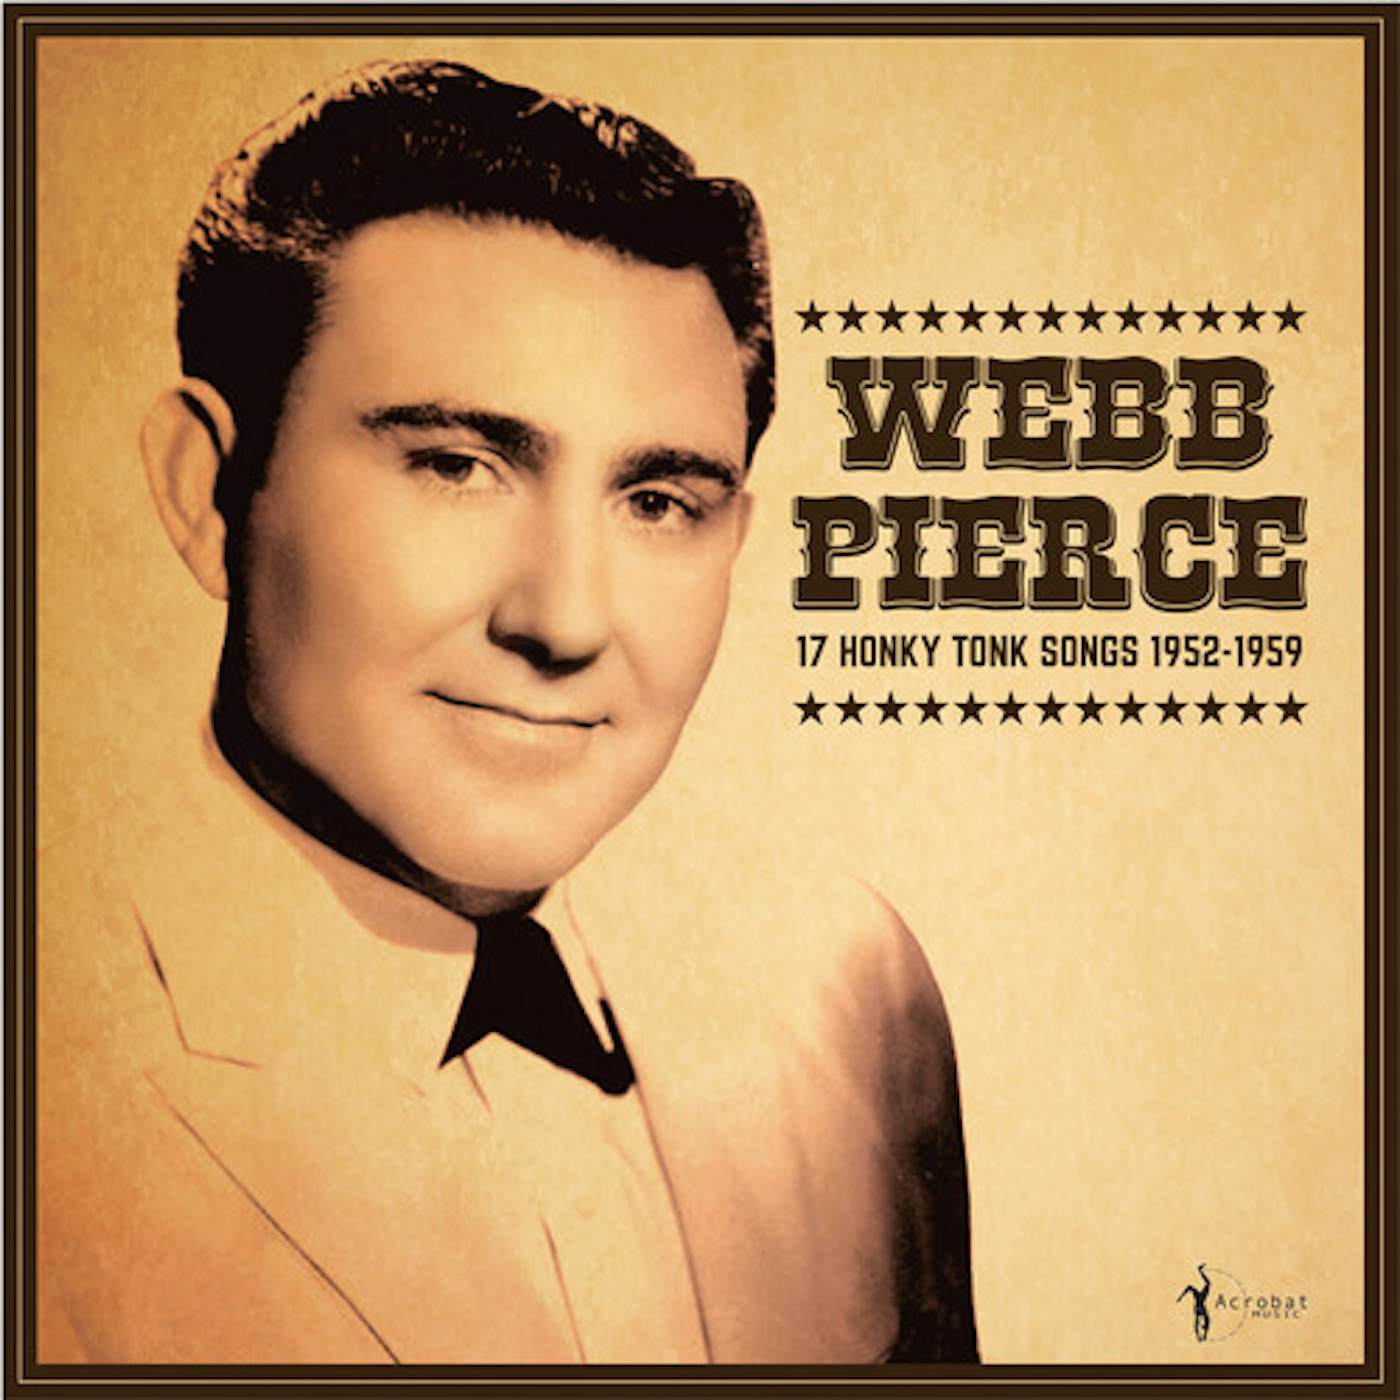 Webb Pierce 17 HONKY TONK SONGS Vinyl Record